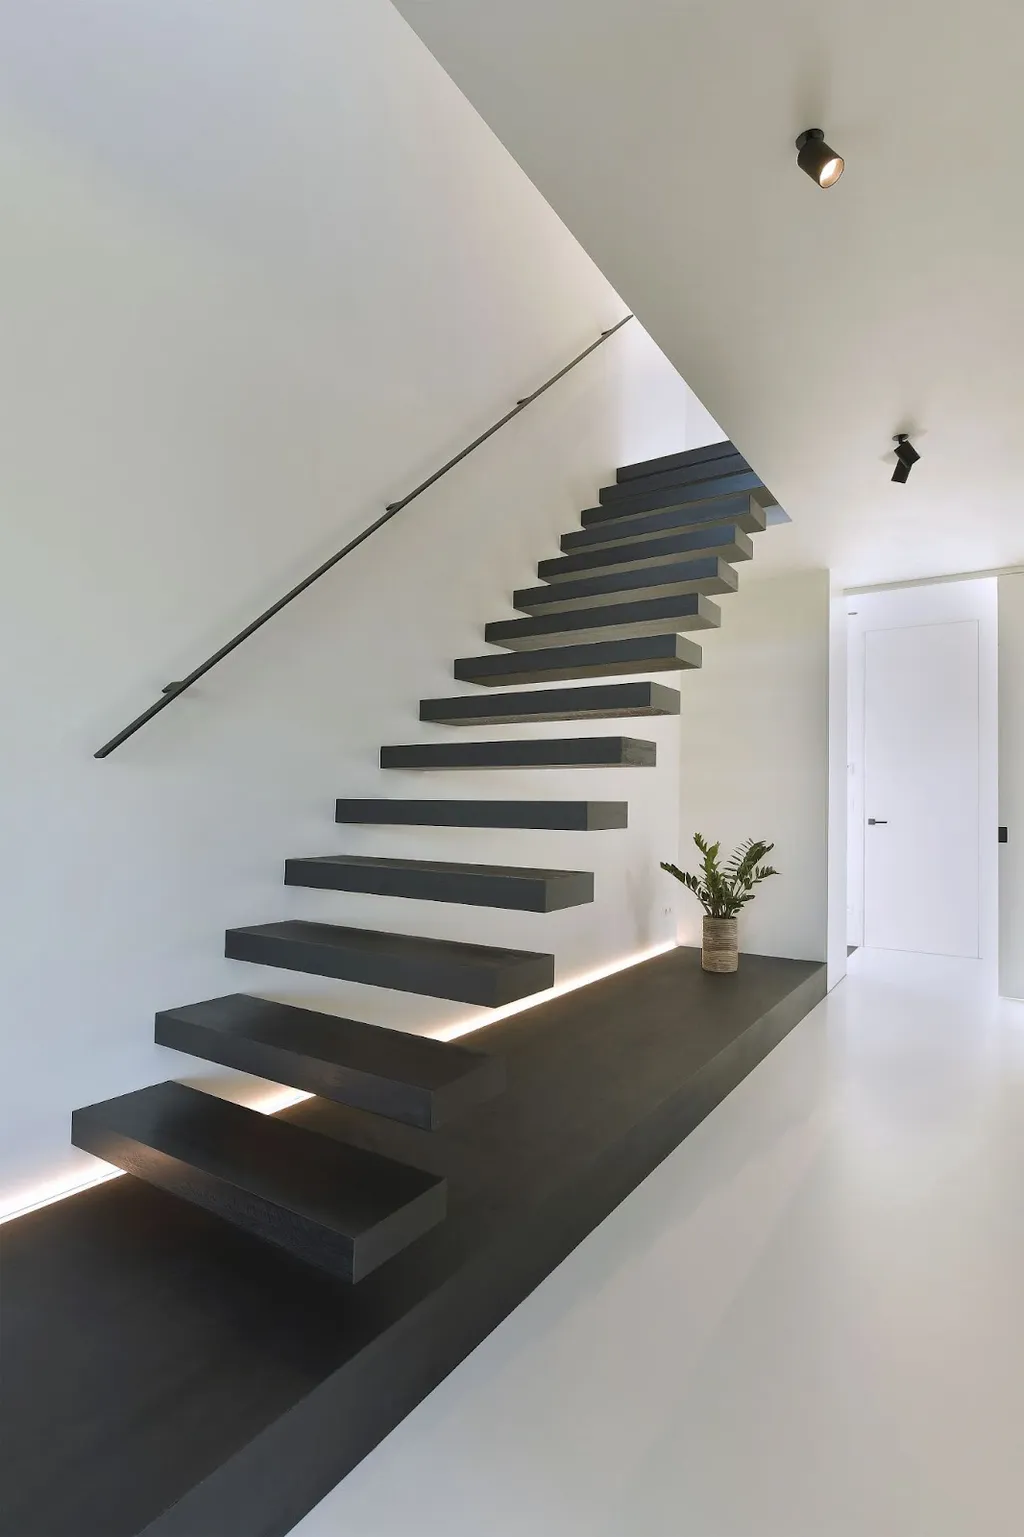 Tạo sự khác biệt cho ngôi nhà với những bậc thang lơ lửng trên không cùng bậc gỗ sơn gam màu tối giản hiện đại.